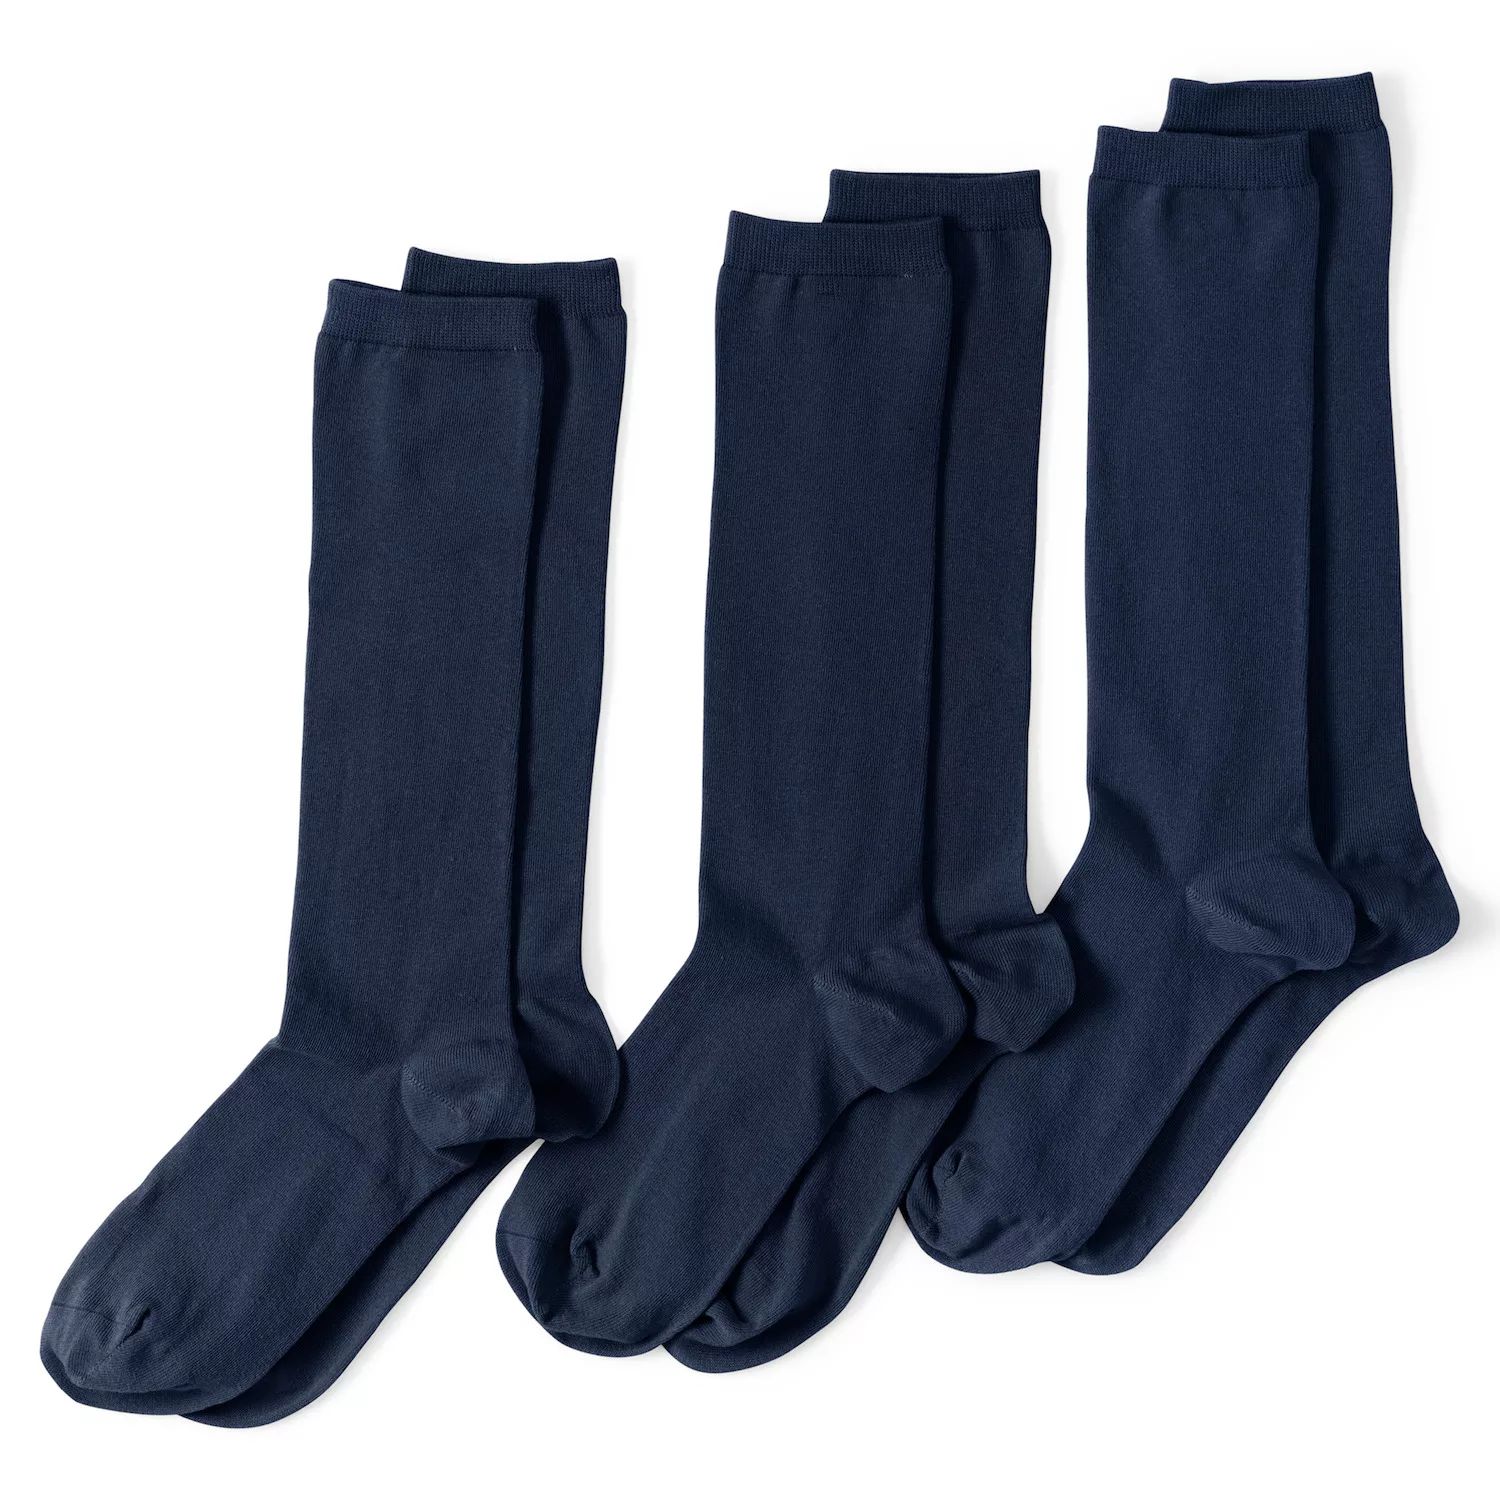 Женские однотонные брючные носки с бесшовным мыском, комплект из 3 шт. Lands' End цена и фото